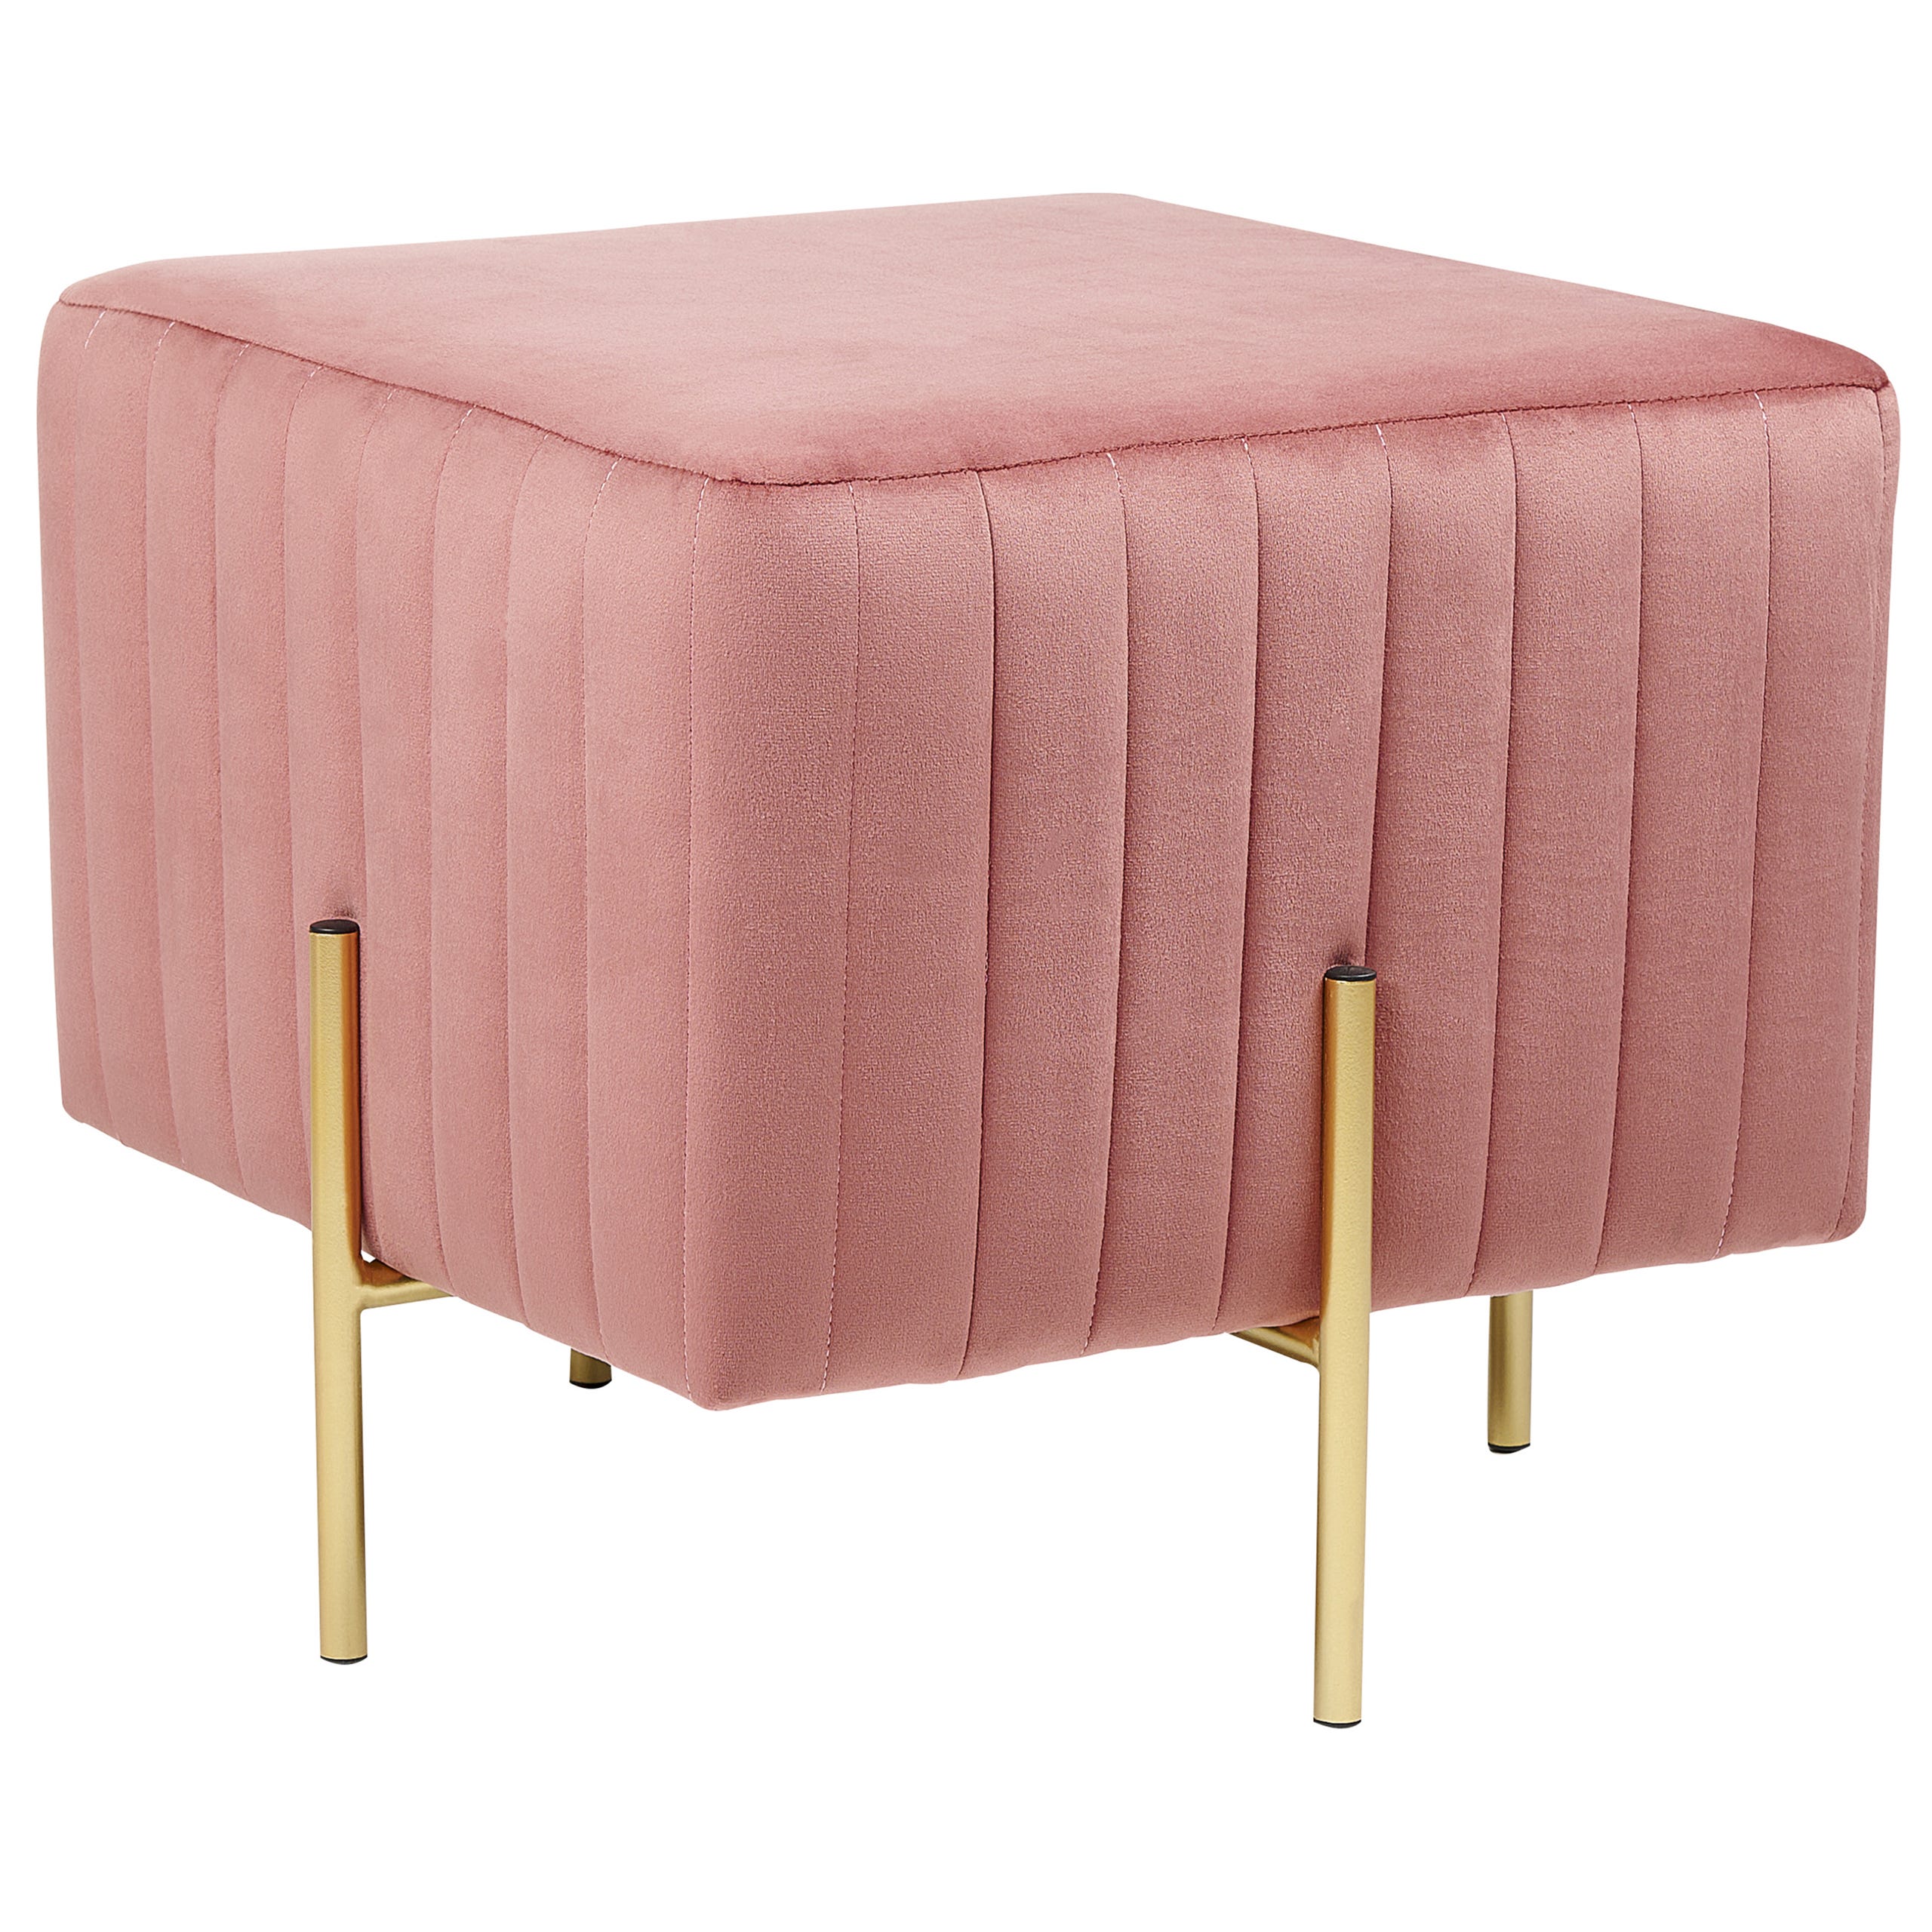 Pouf-tavolino tondo in velluto rosa con stampa magnolie